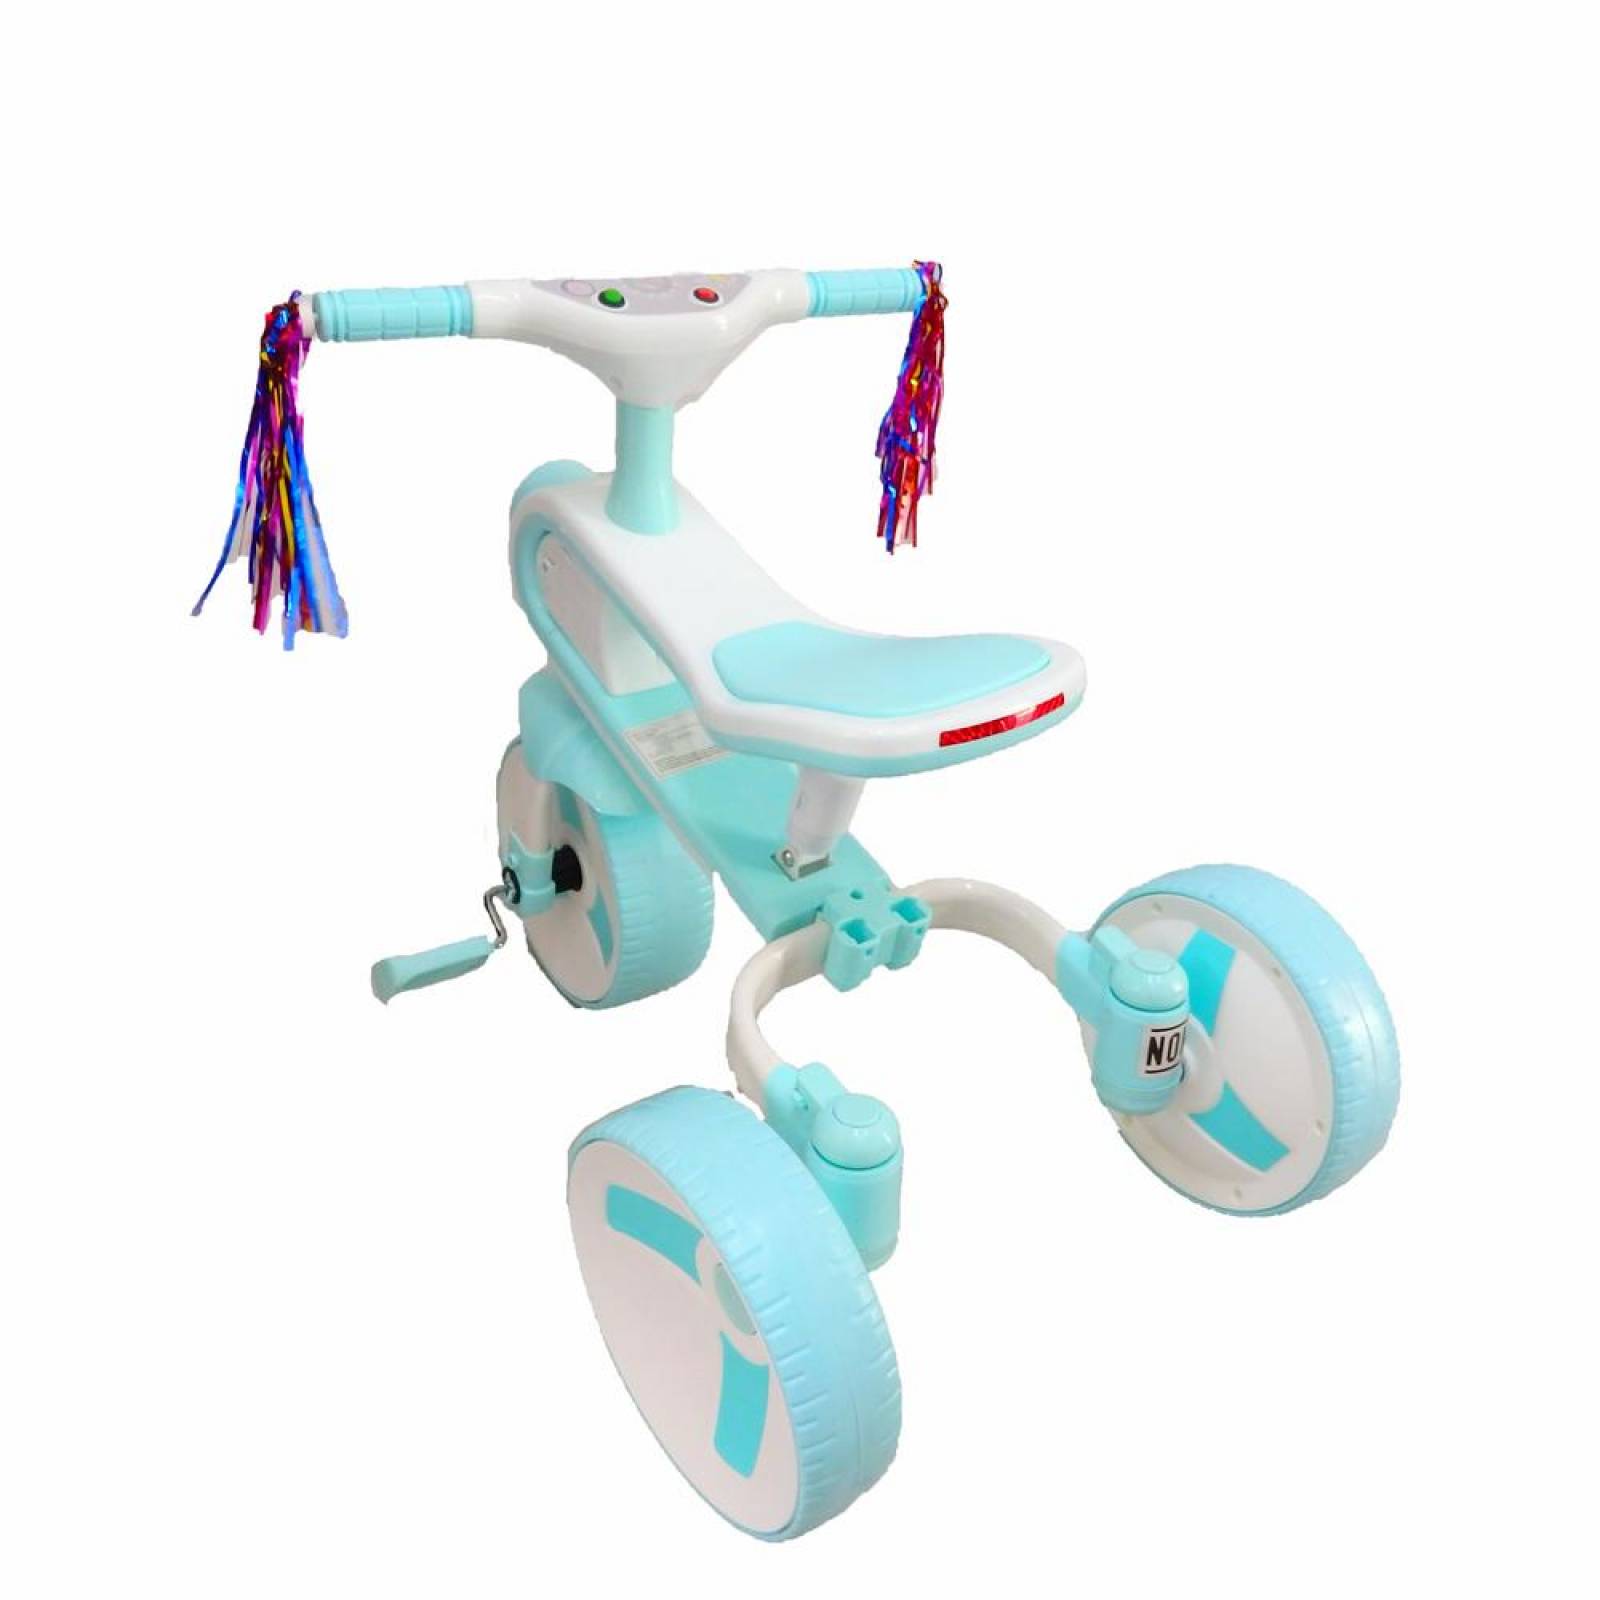 Triciclo Bicicleta y correpasillos 3 en 1 hasta de 6 años Azul Azul cielo